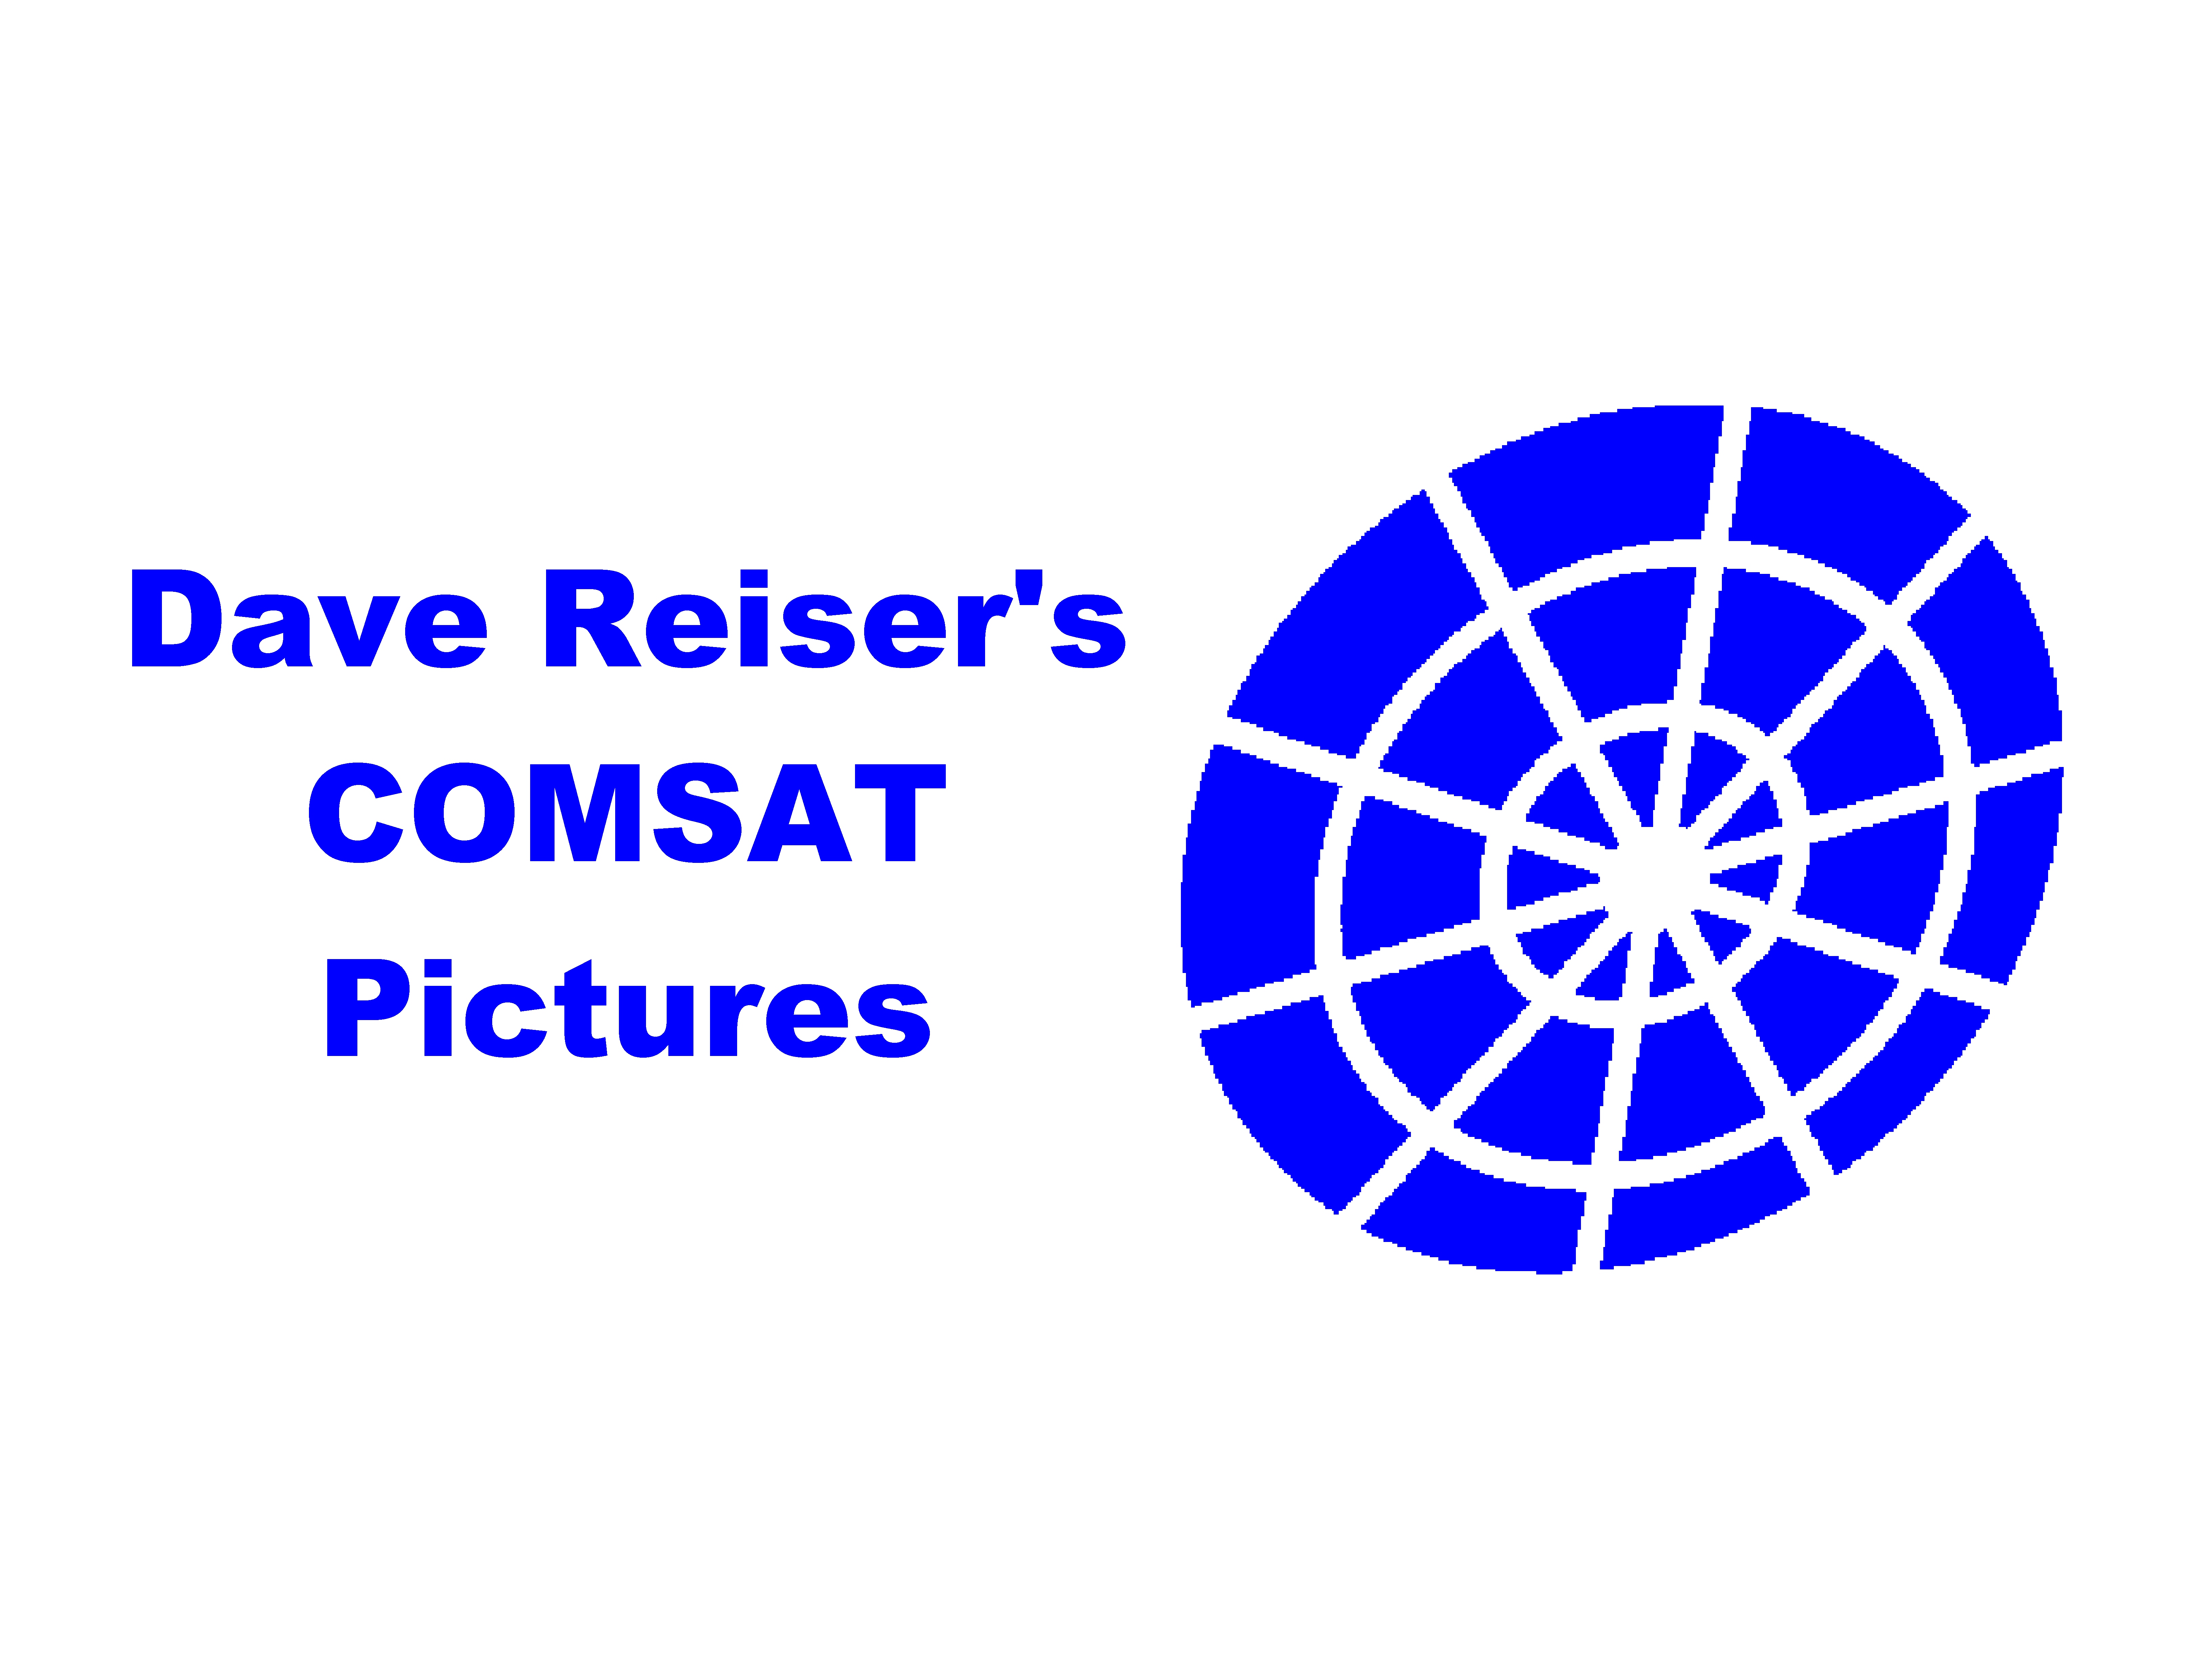 Reiser's COMSAT Pictures.jpg